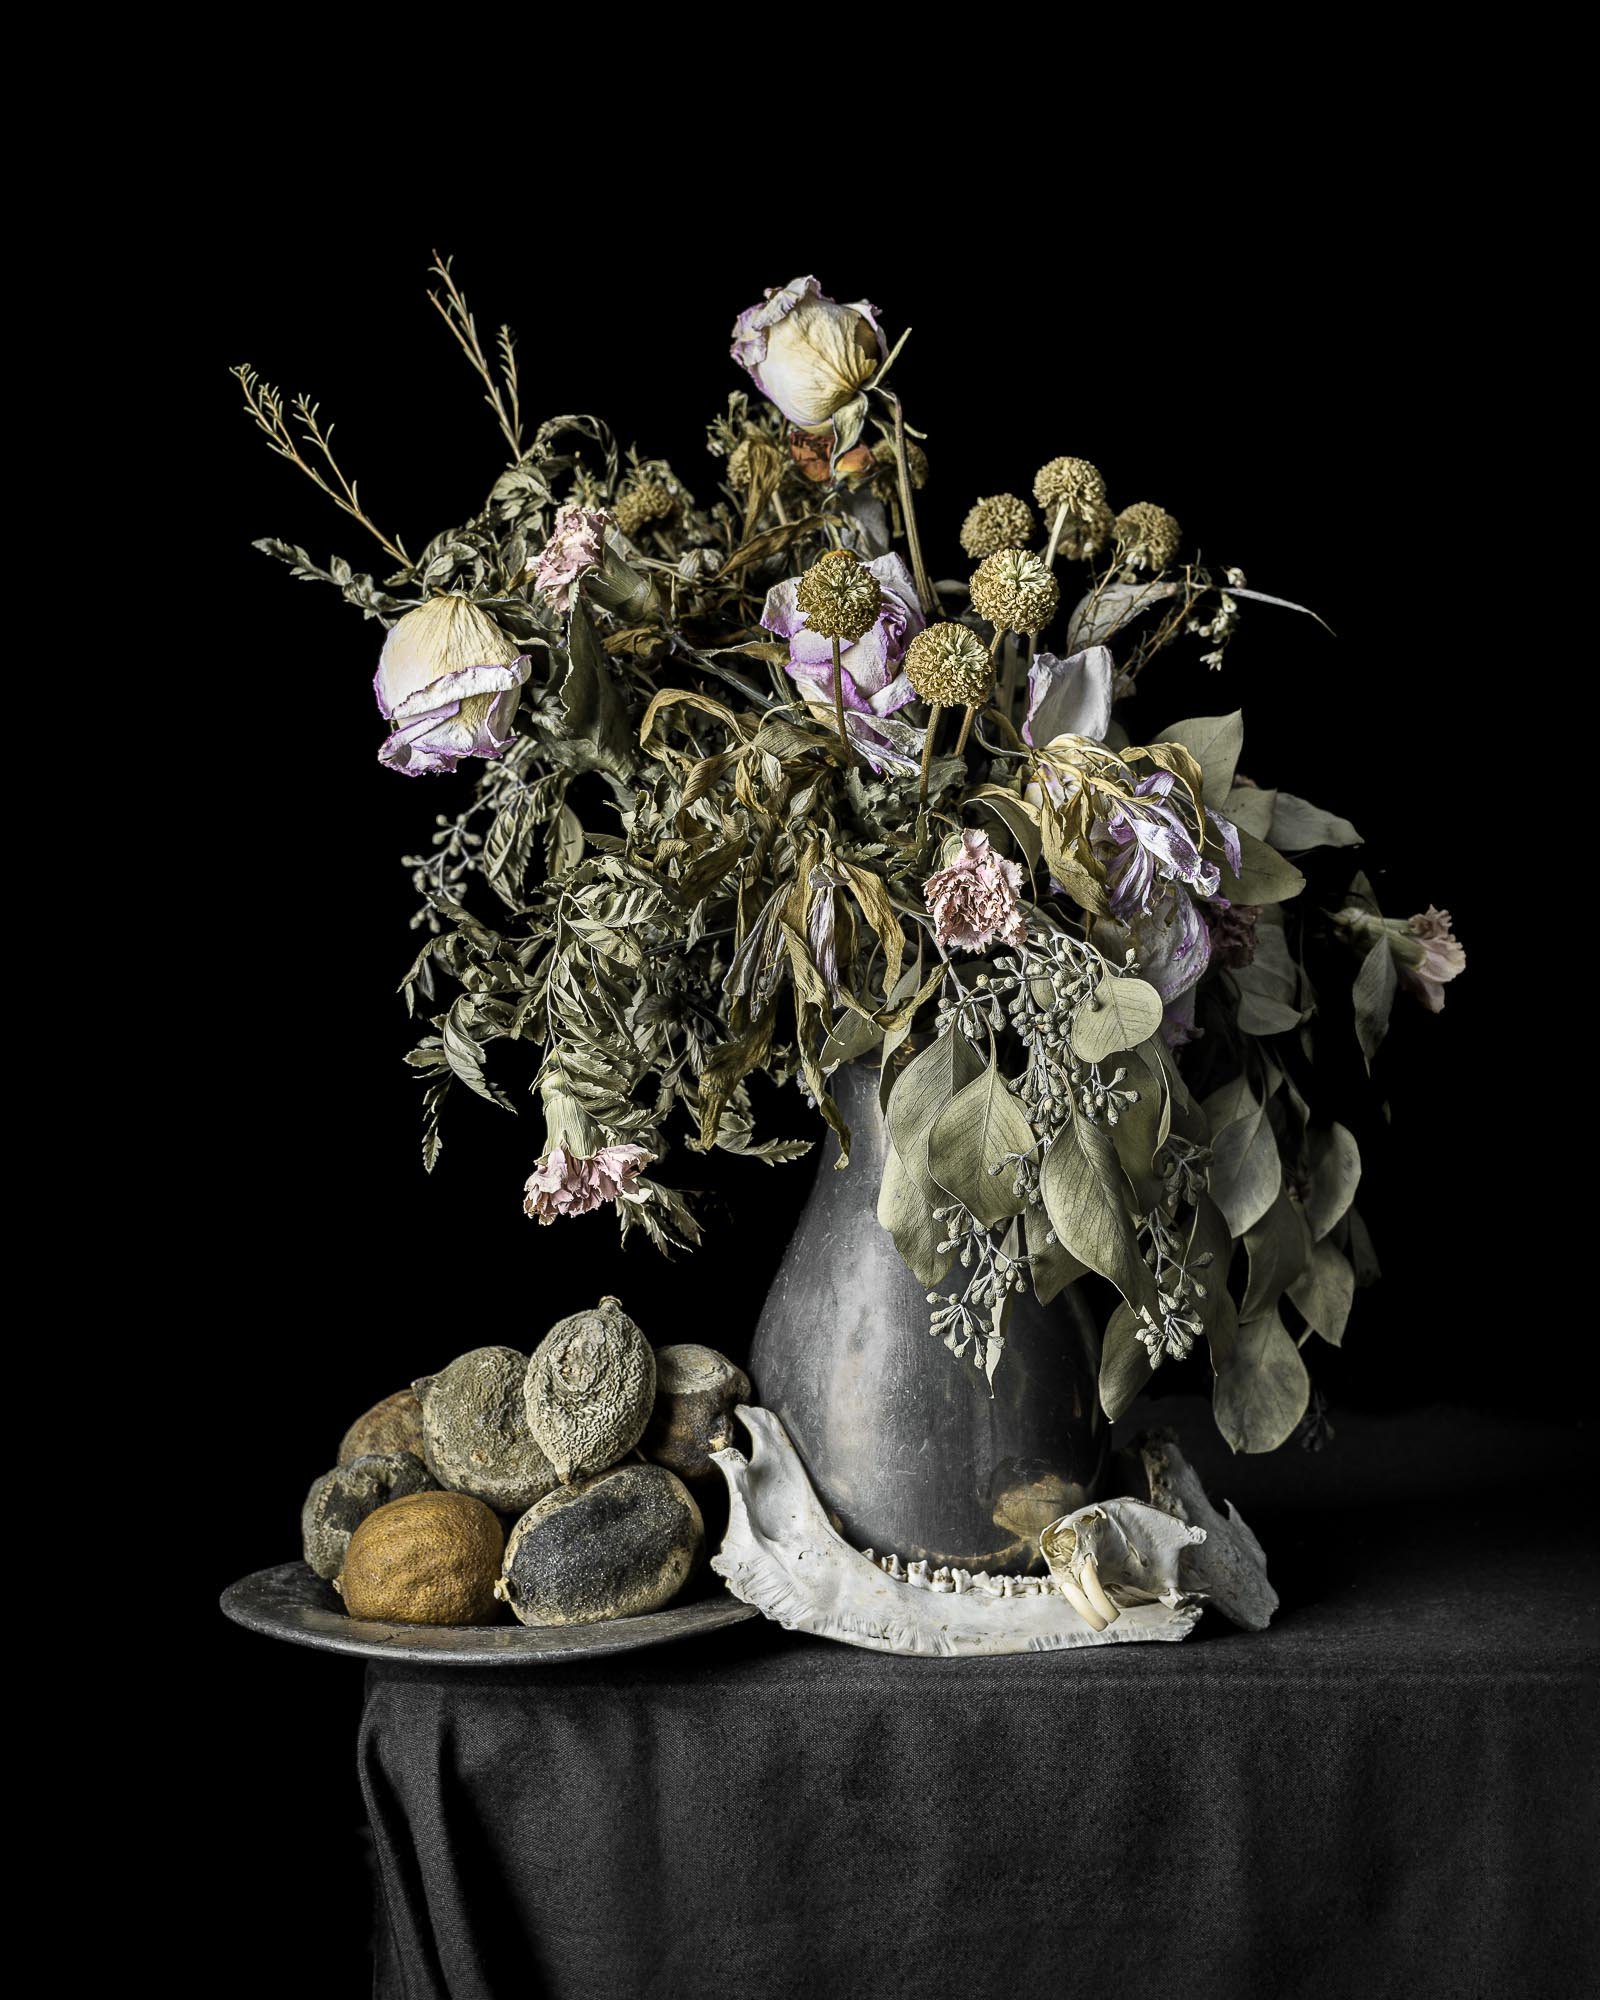 neal-auch-vanitas-with-flowers-and-bones-web-5.jpg